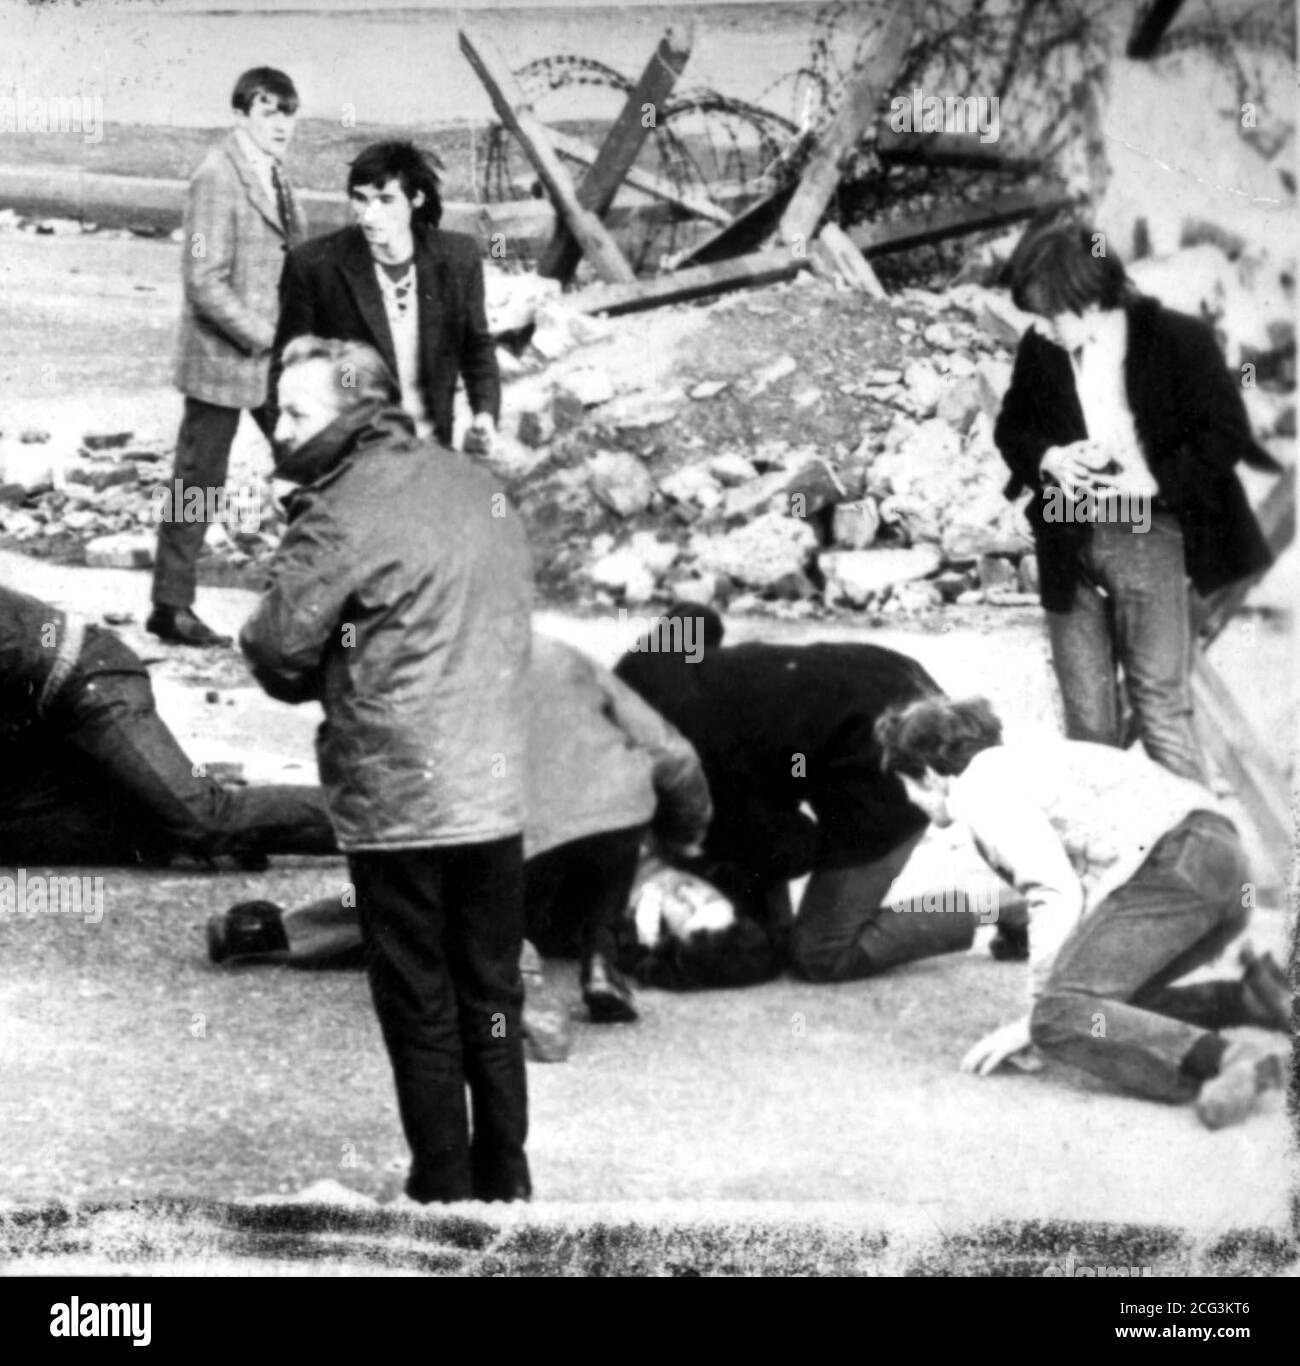 Ein Mann, der während des Schießereignisses in Londonderry, Nordirland, Aufmerksamkeit erhielt, der als Blutiger Sonntag bekannt wurde. Auf dem Boden liegt ein Mann, der Aufmerksamkeit erhält, während der Jugendliche in einer Sportjacke (ganz links oben) Michael McDaid, 17, sein soll, der später getötet wurde. *25/01/97: Mehrere hundert Demonstranten begannen einen marsch durch Nord-London, um den 25. Jahrestag des Blutigen Sonntags zu begehen. * die Polizei eskortierte die Demonstranten, als sie mit Rohrbändern und flaggenschwingenden Aktivisten von Highbury Fields nach Archway marschierten. Sinn Feins Chefunterhändler Martin McGuinness w Stockfoto